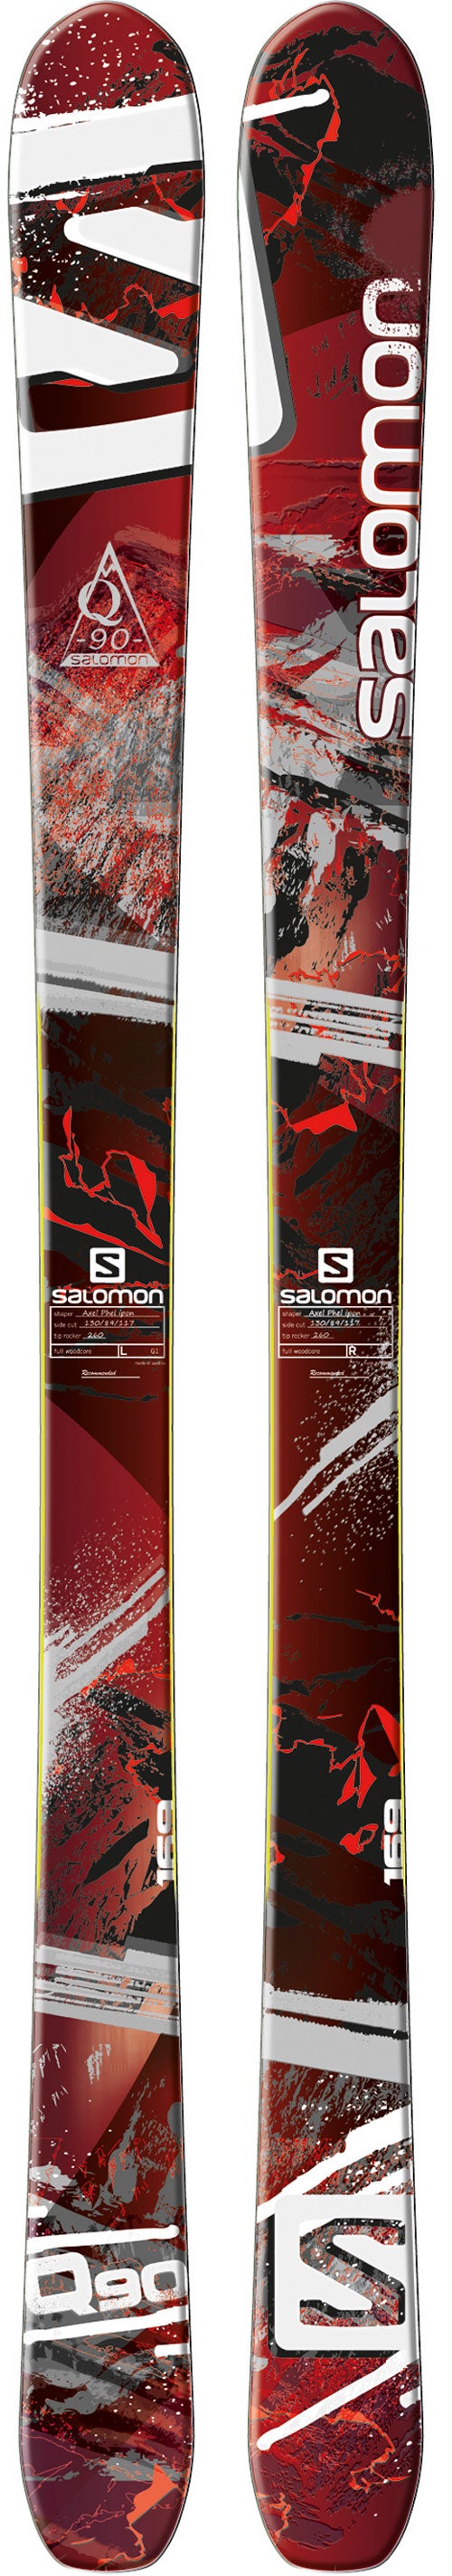 Salomon Quest-90 - Ski Mag